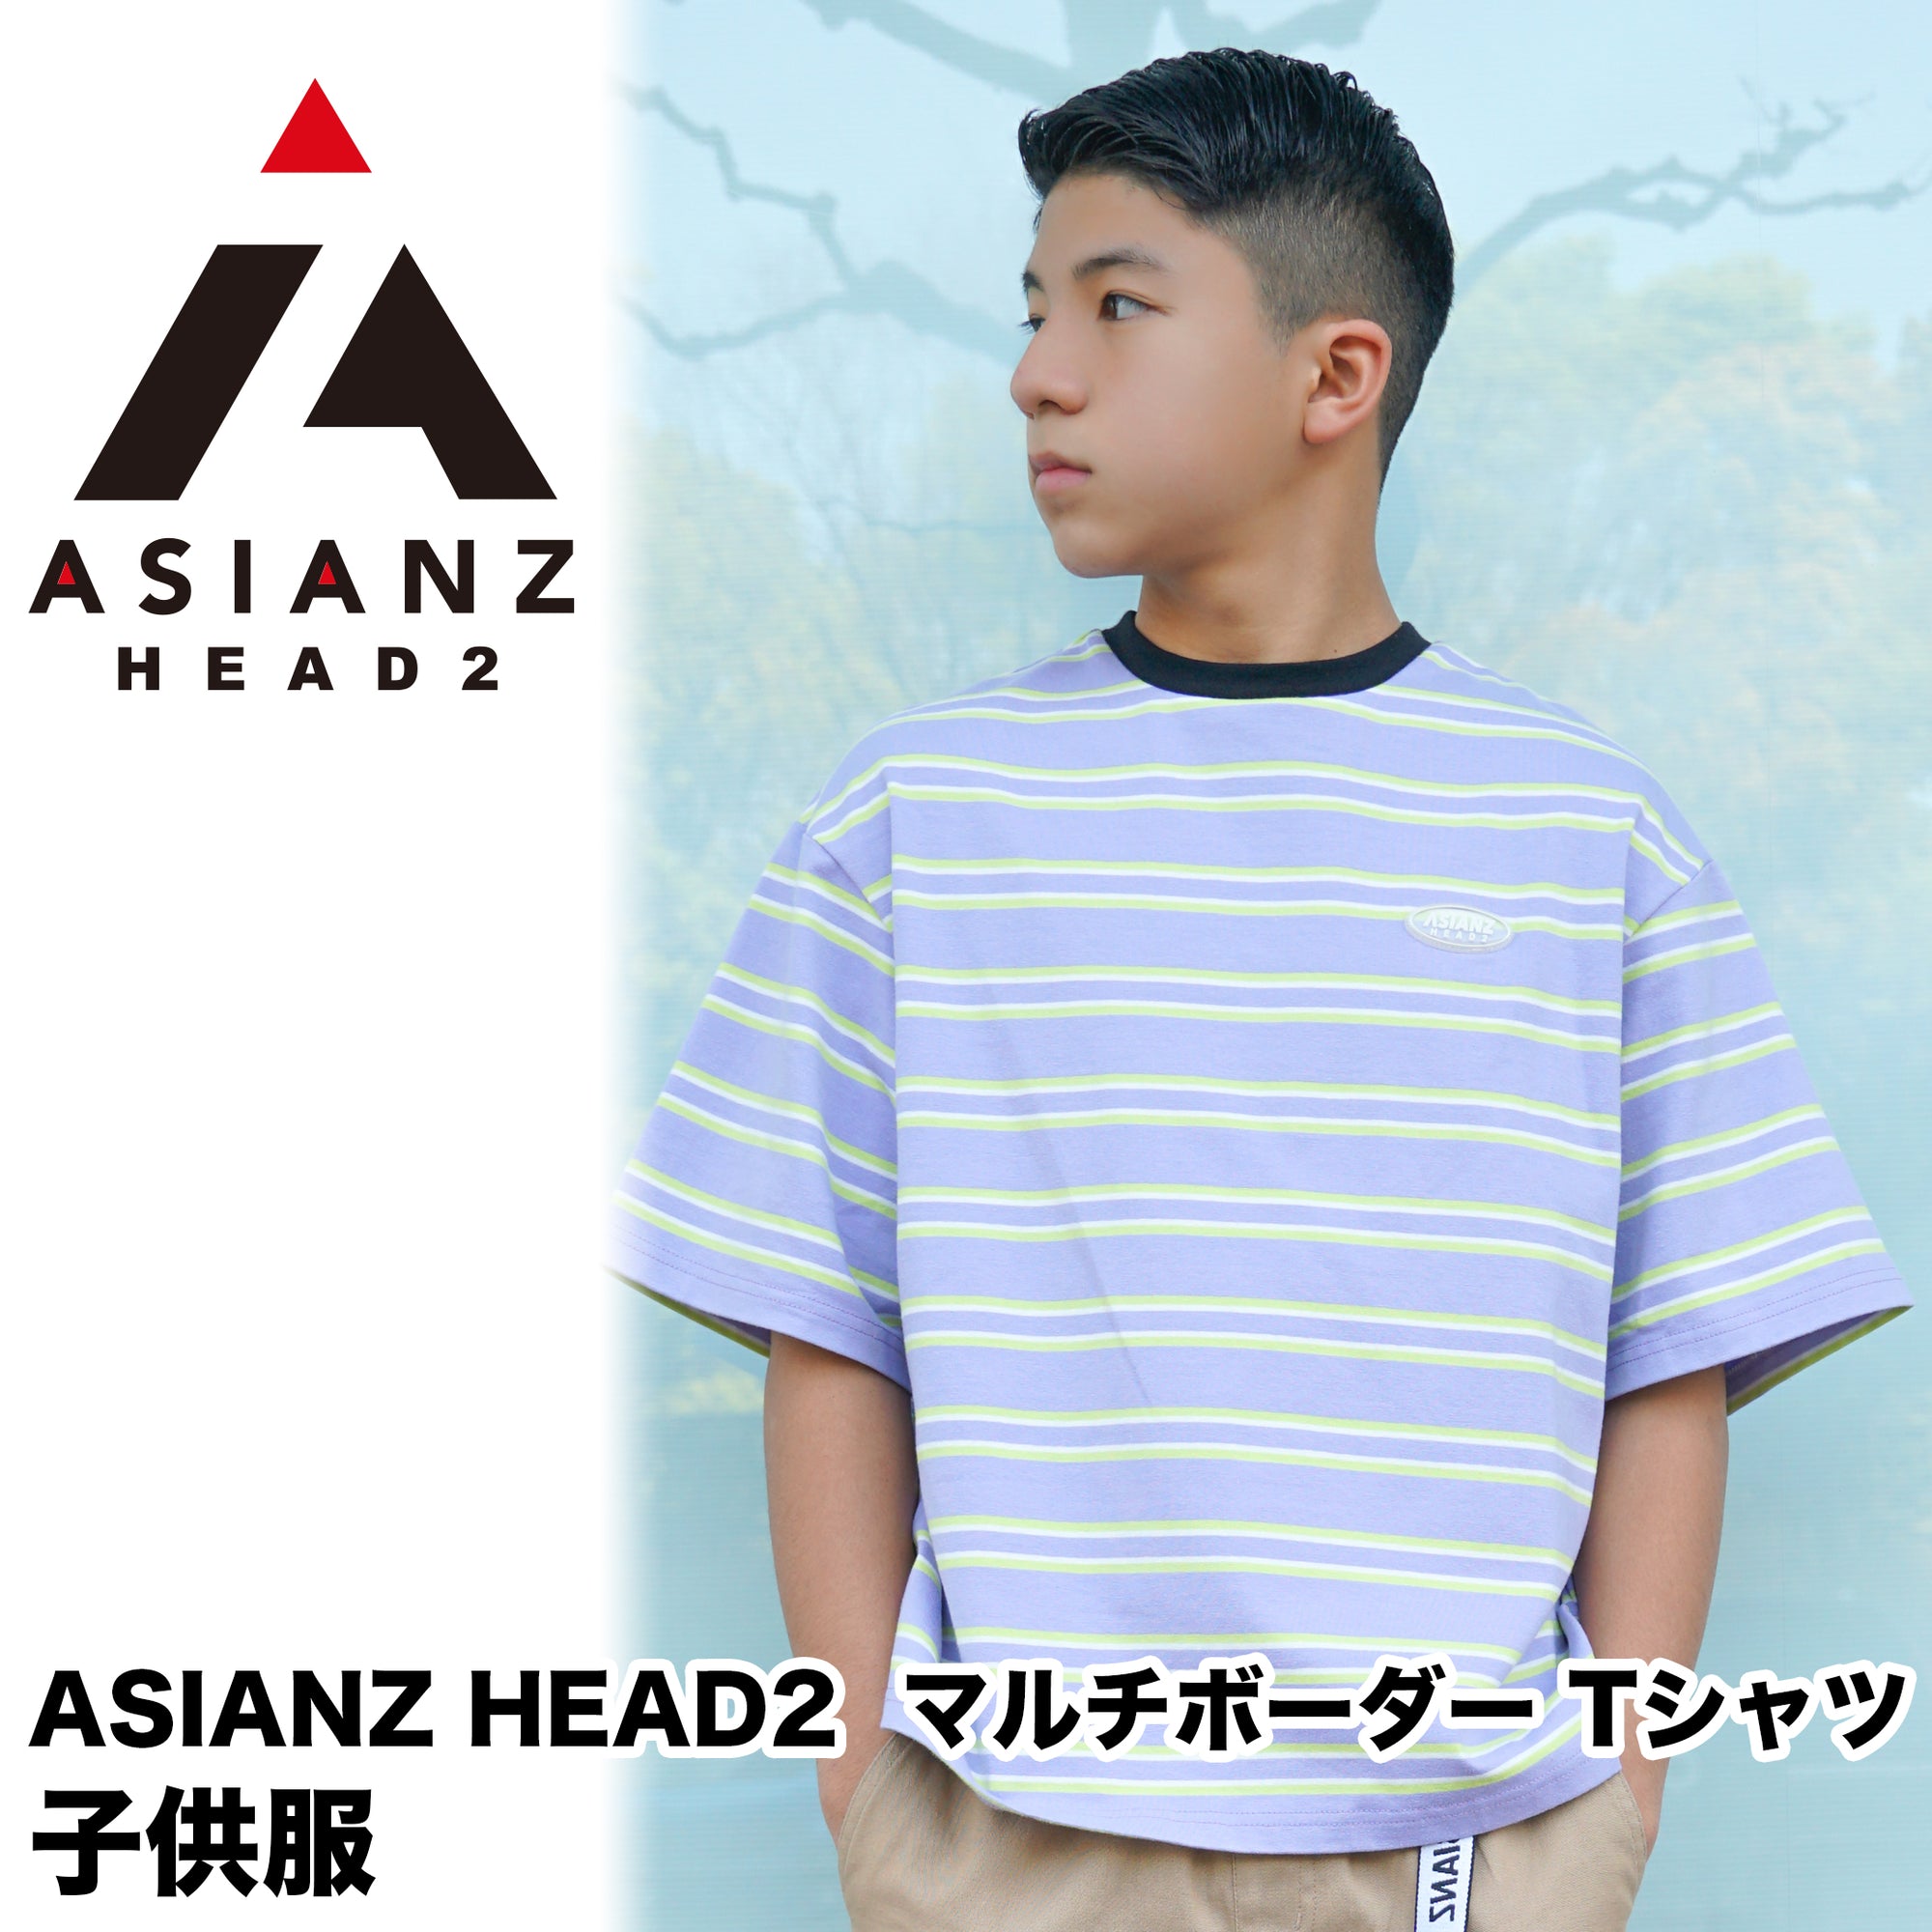 (40%オフ! セール商品)ASIANZ HEAD2 マルチボーダーTシャツ キッズウェアー